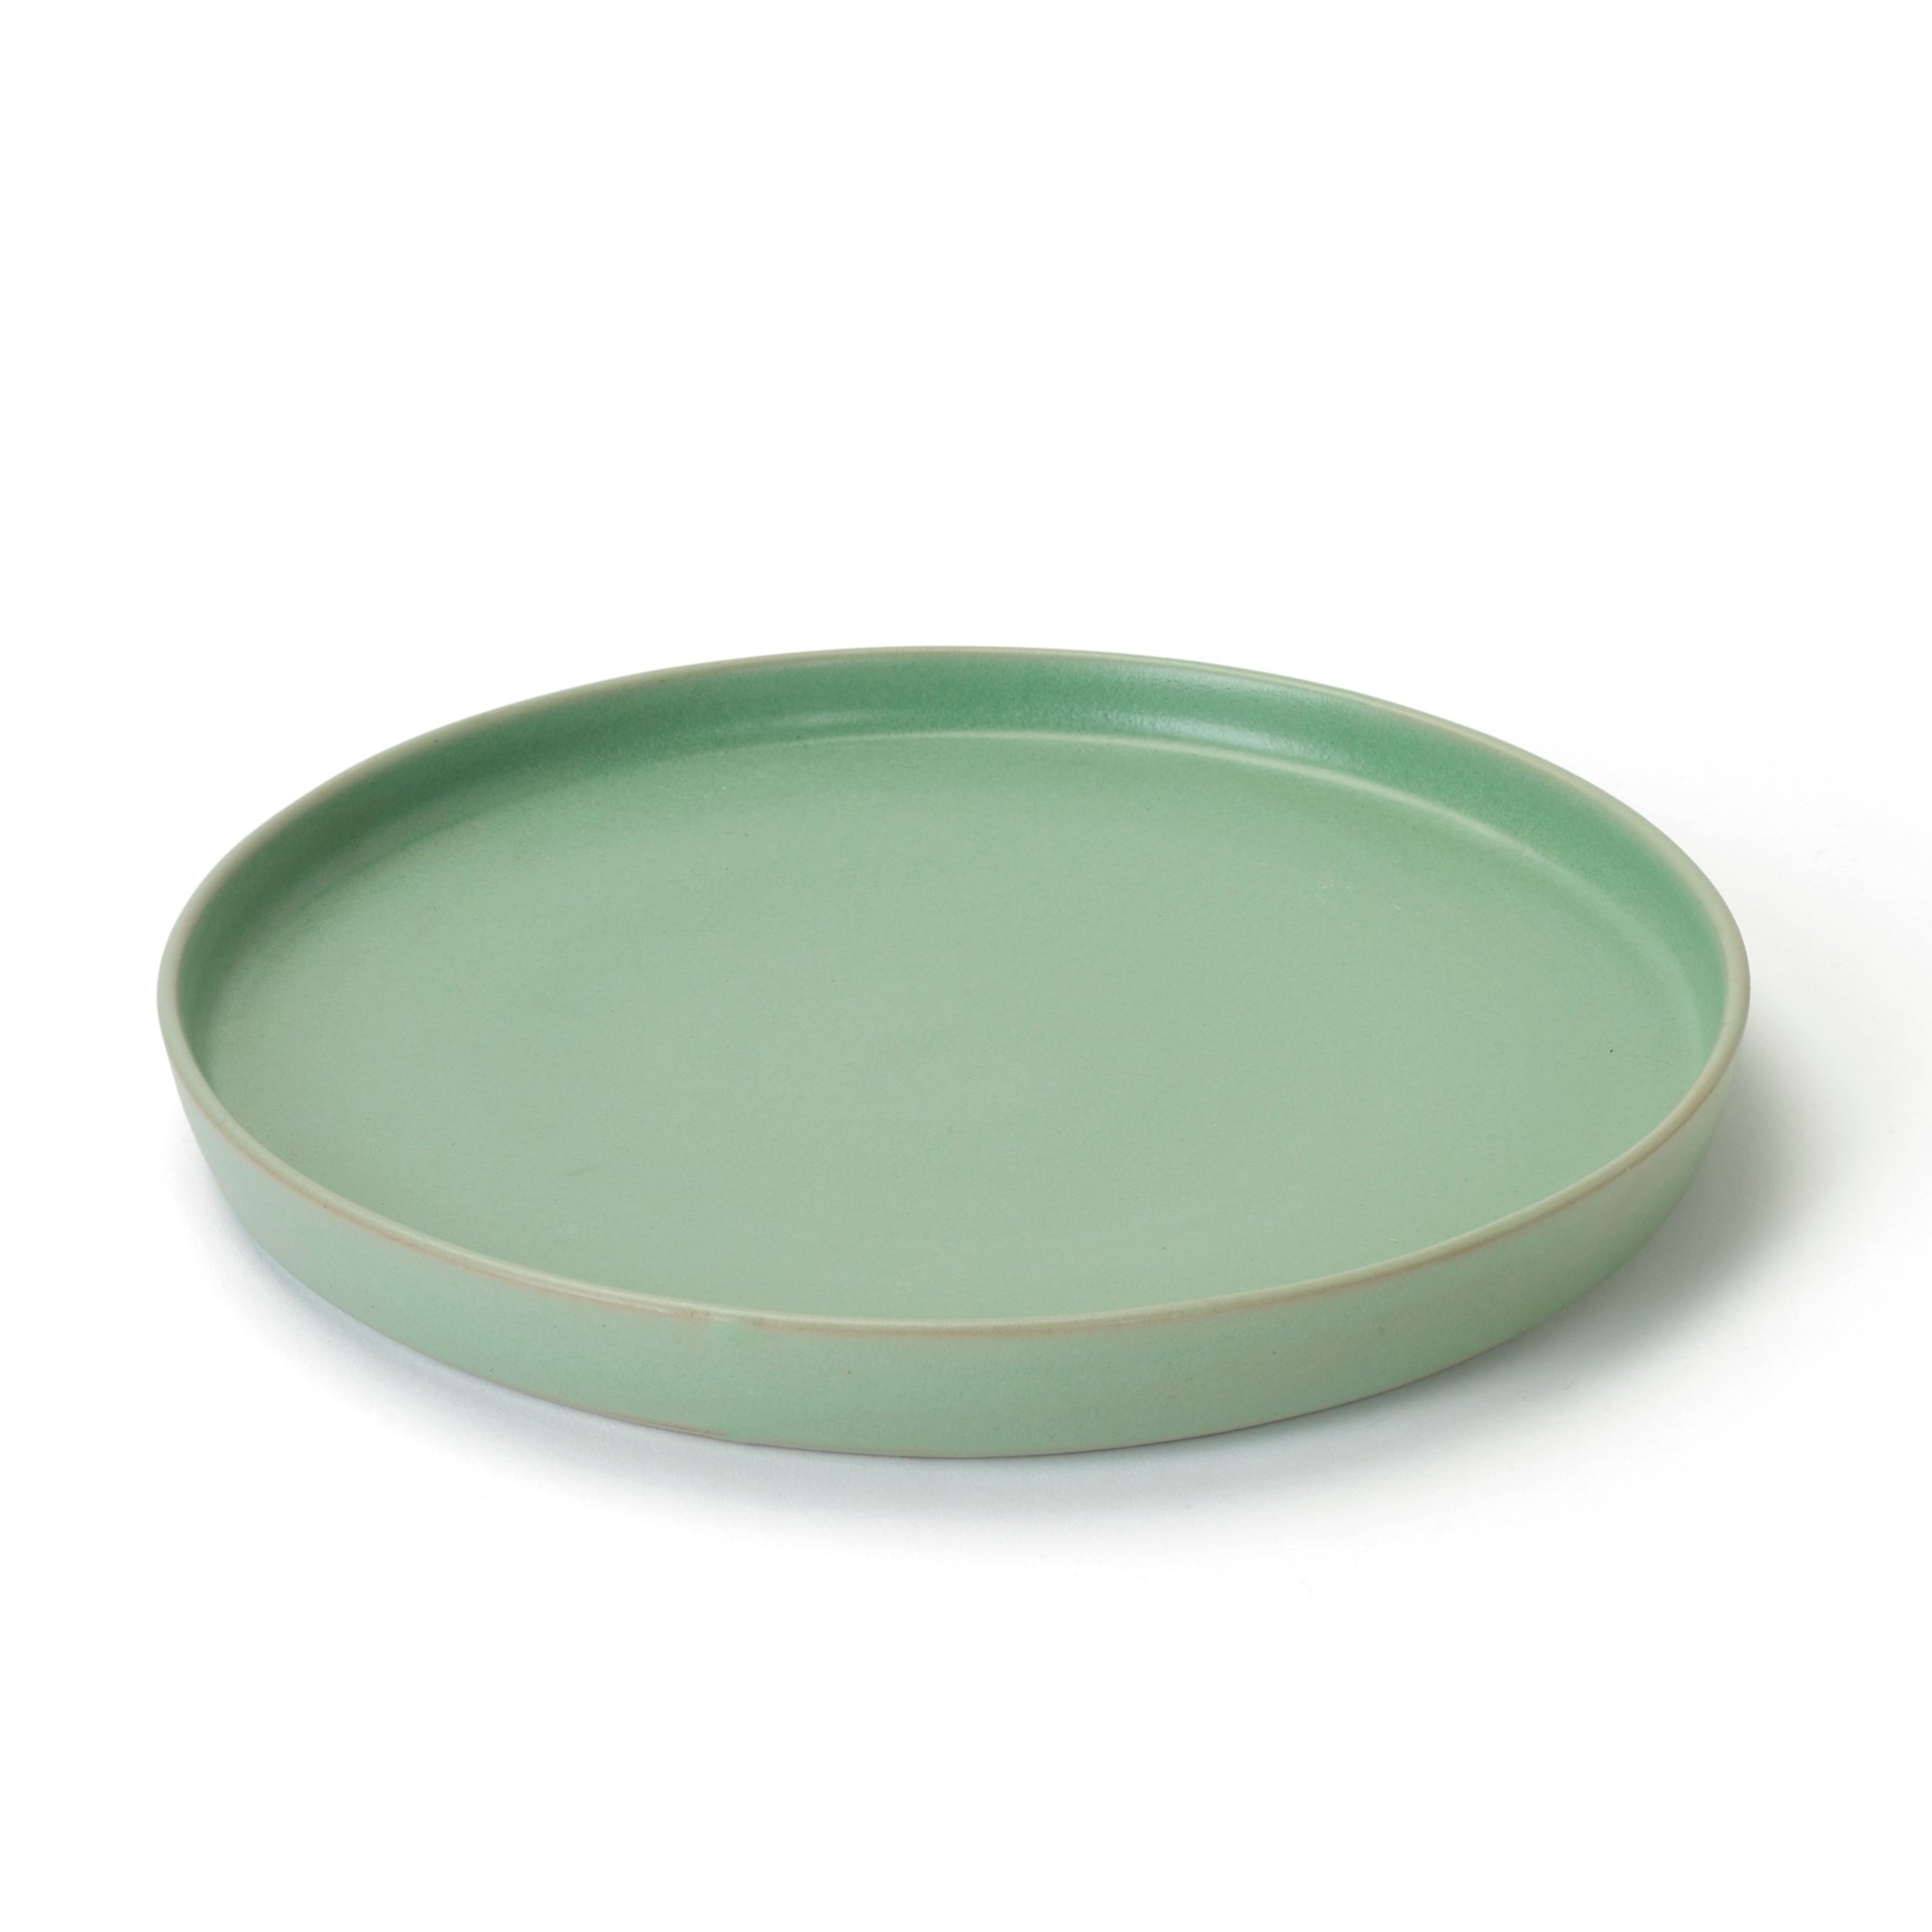 Green Serving Platter